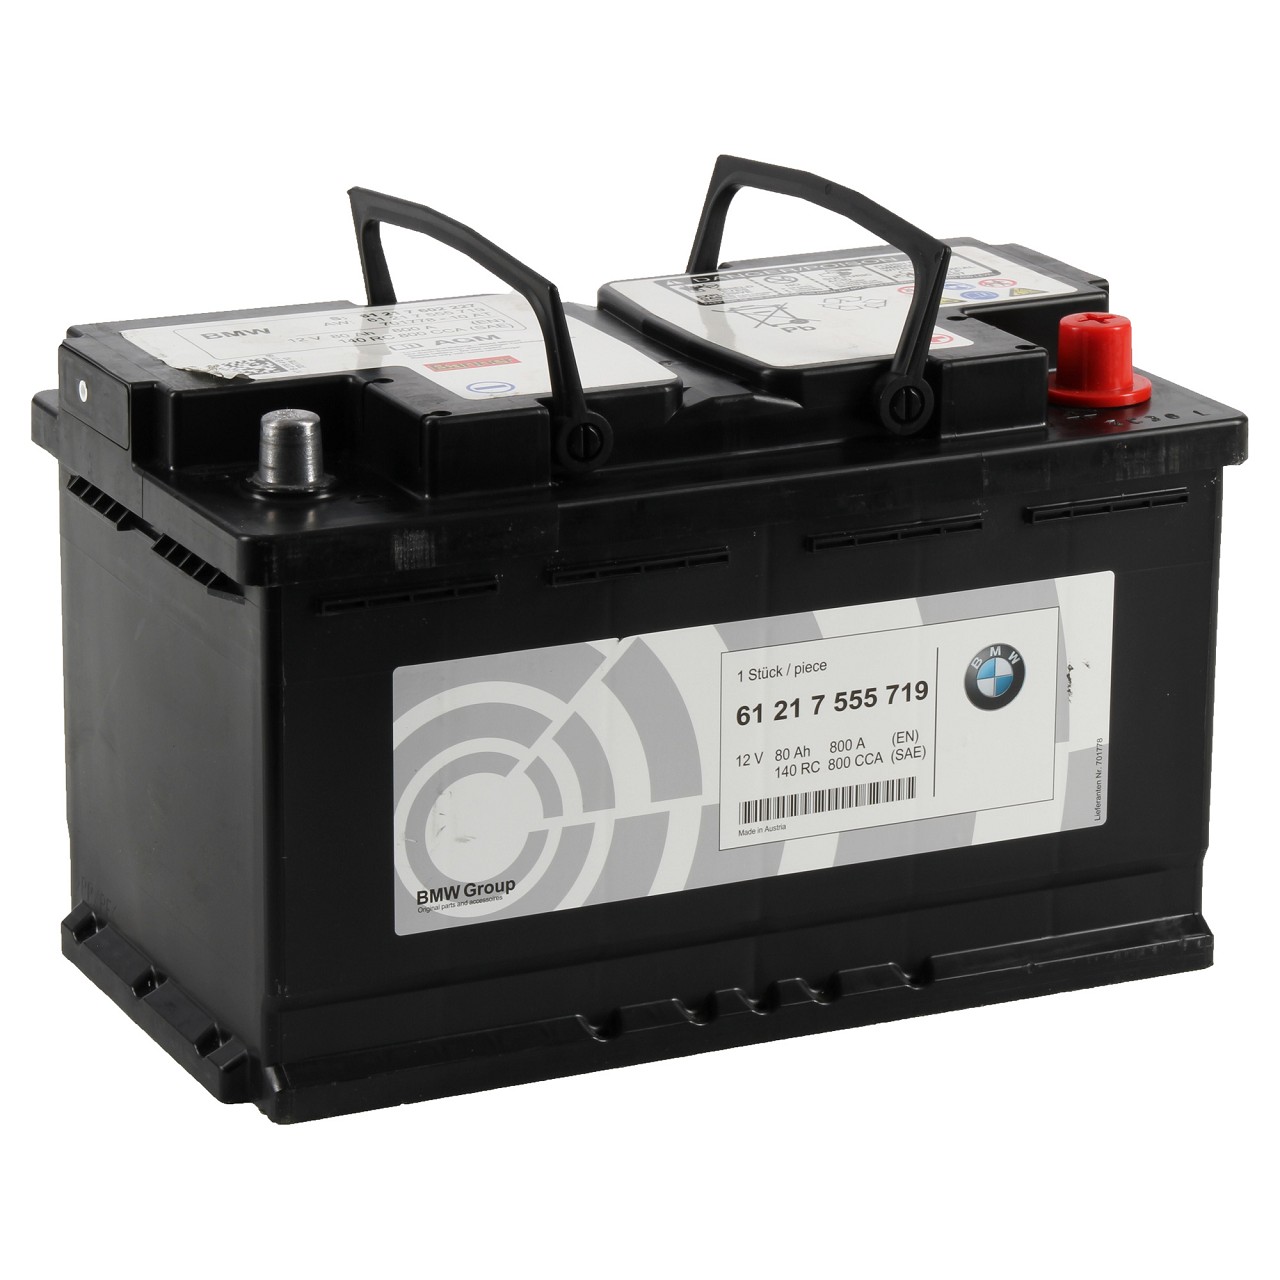 Original BMW Autobatterien - 61 21 7 555 719